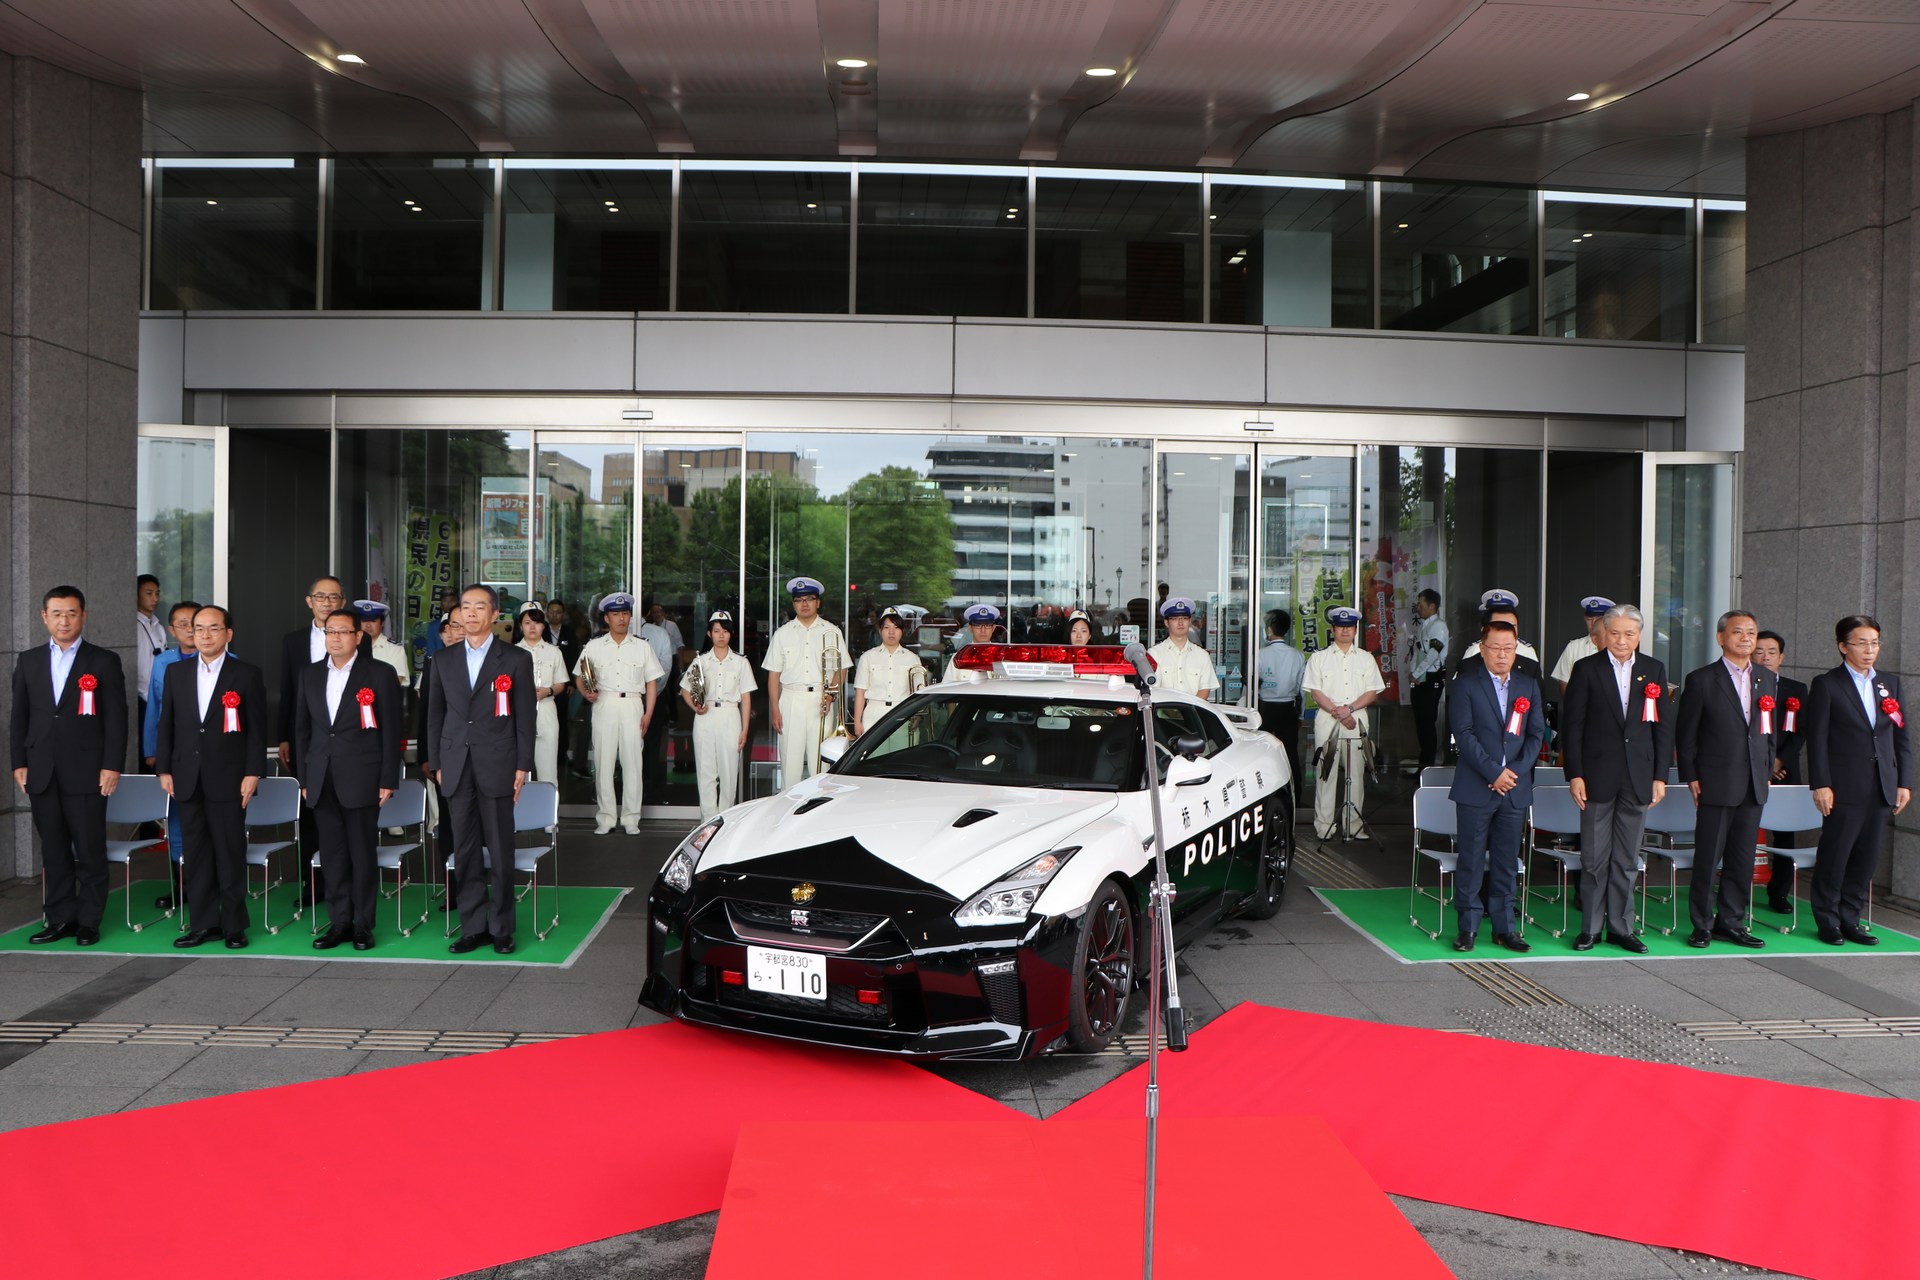 "بالصور" نيسان GT-R تدخل الخدمة رسميا بأسطول الشرطة اليابانية 5